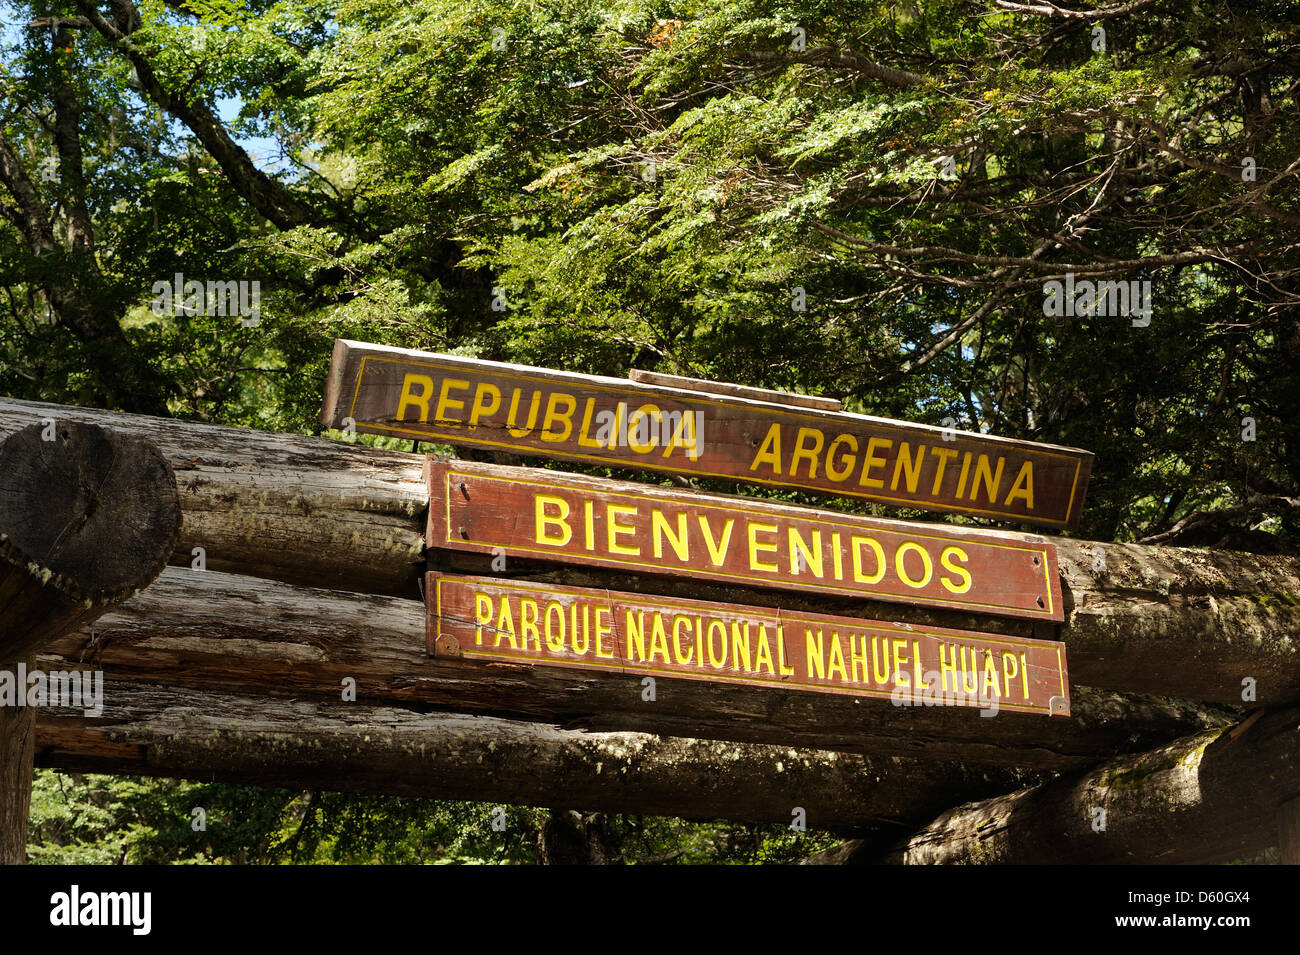 Sign saying 'Republica Argentina Bienvenidos Parque Nacional Nahuel Huapi'. Parque Nacional Nahuel Huapi, Argentina. Stock Photo